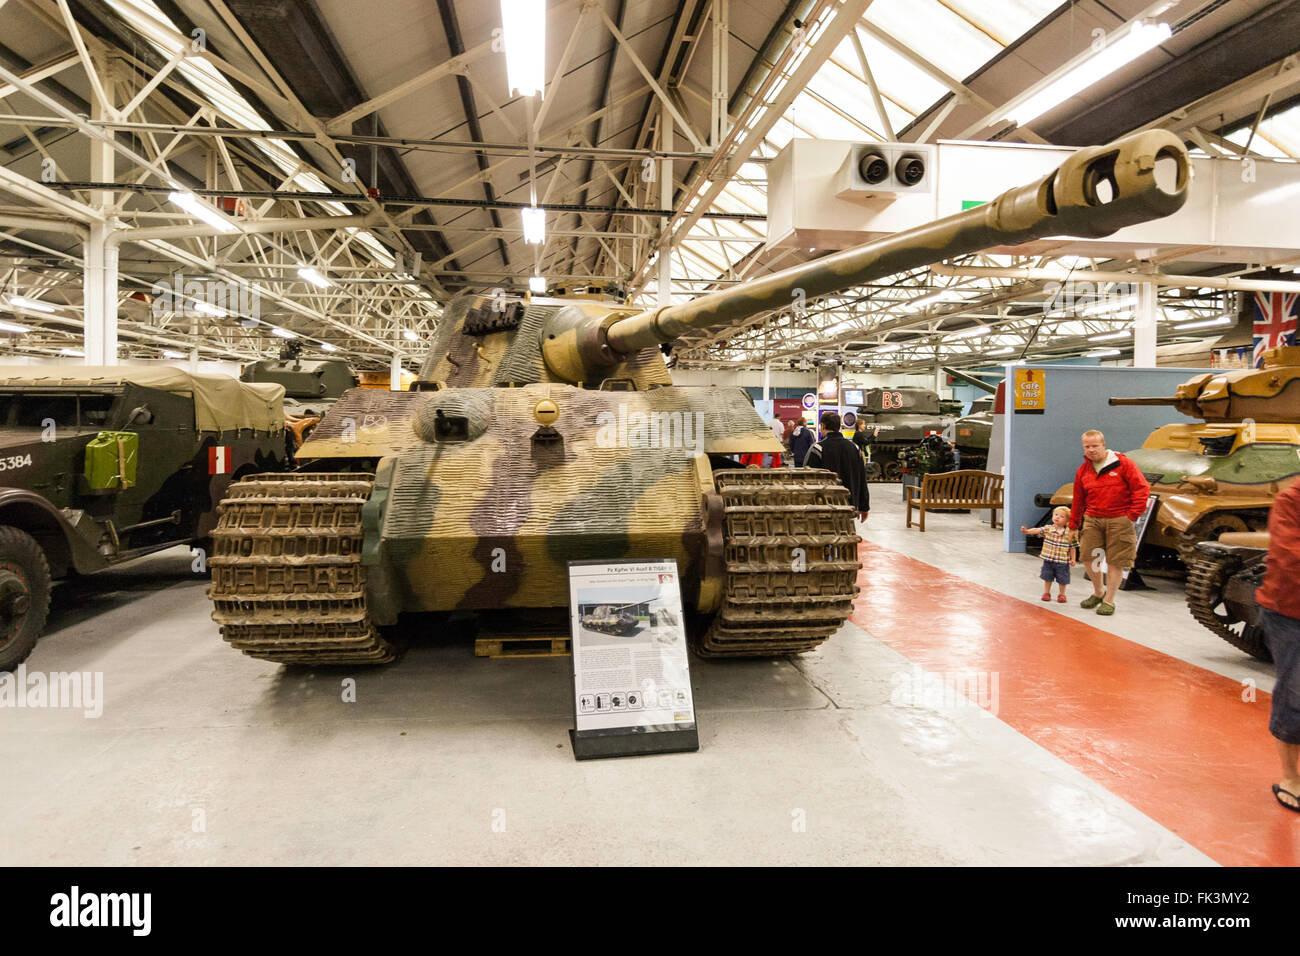 Tank Museum, bovington innere Display, deutscher Tiger II, König Tiger Panzer aus dem Zweiten Weltkrieg, Museum Halle, andere Tanks und Menschen. Stockfoto